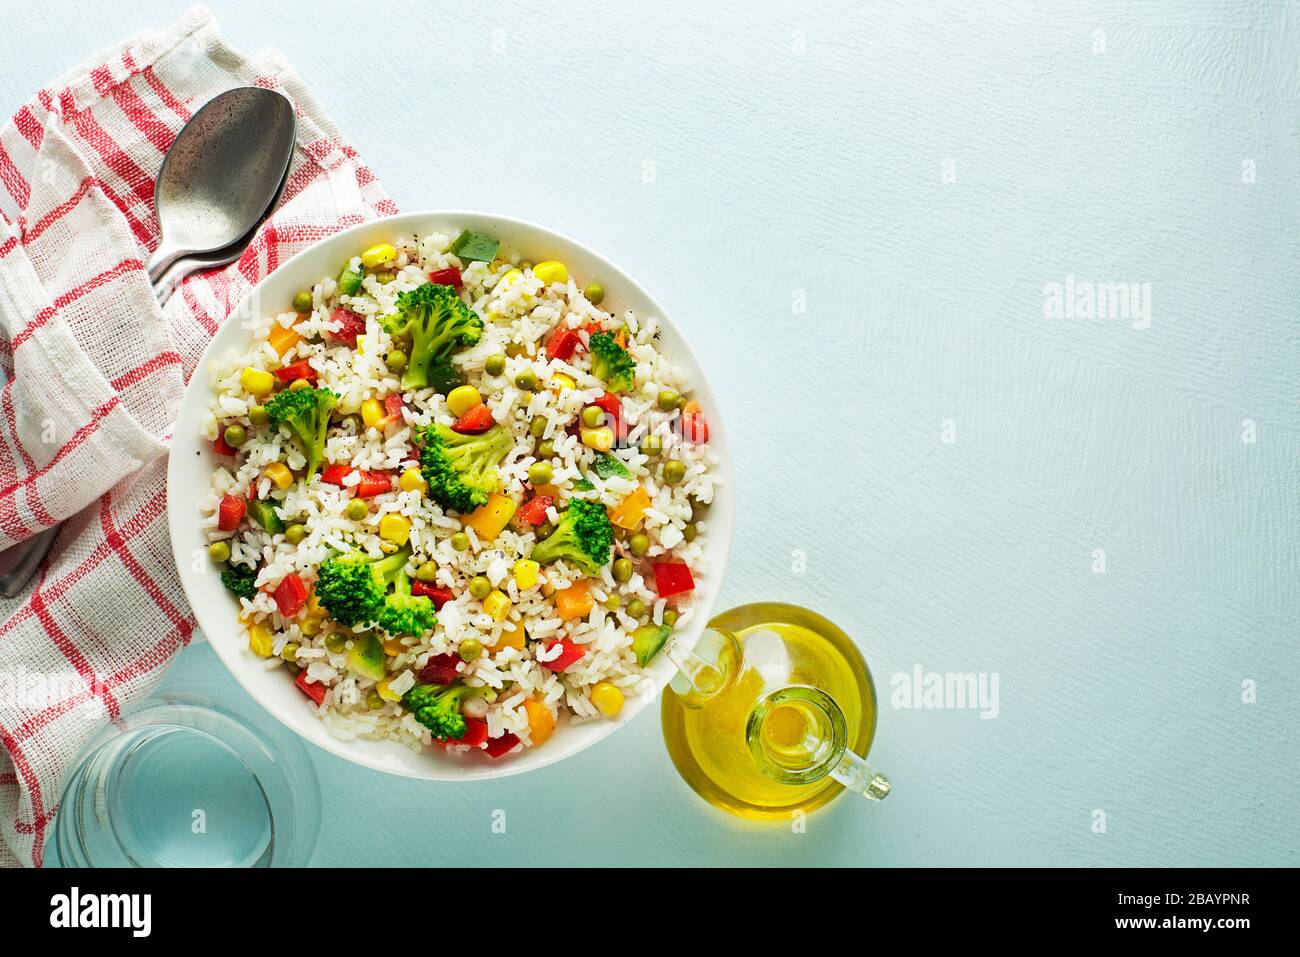 Salade de riz frais avec légumes mélangés dans un bol sur la table bleue Banque D'Images